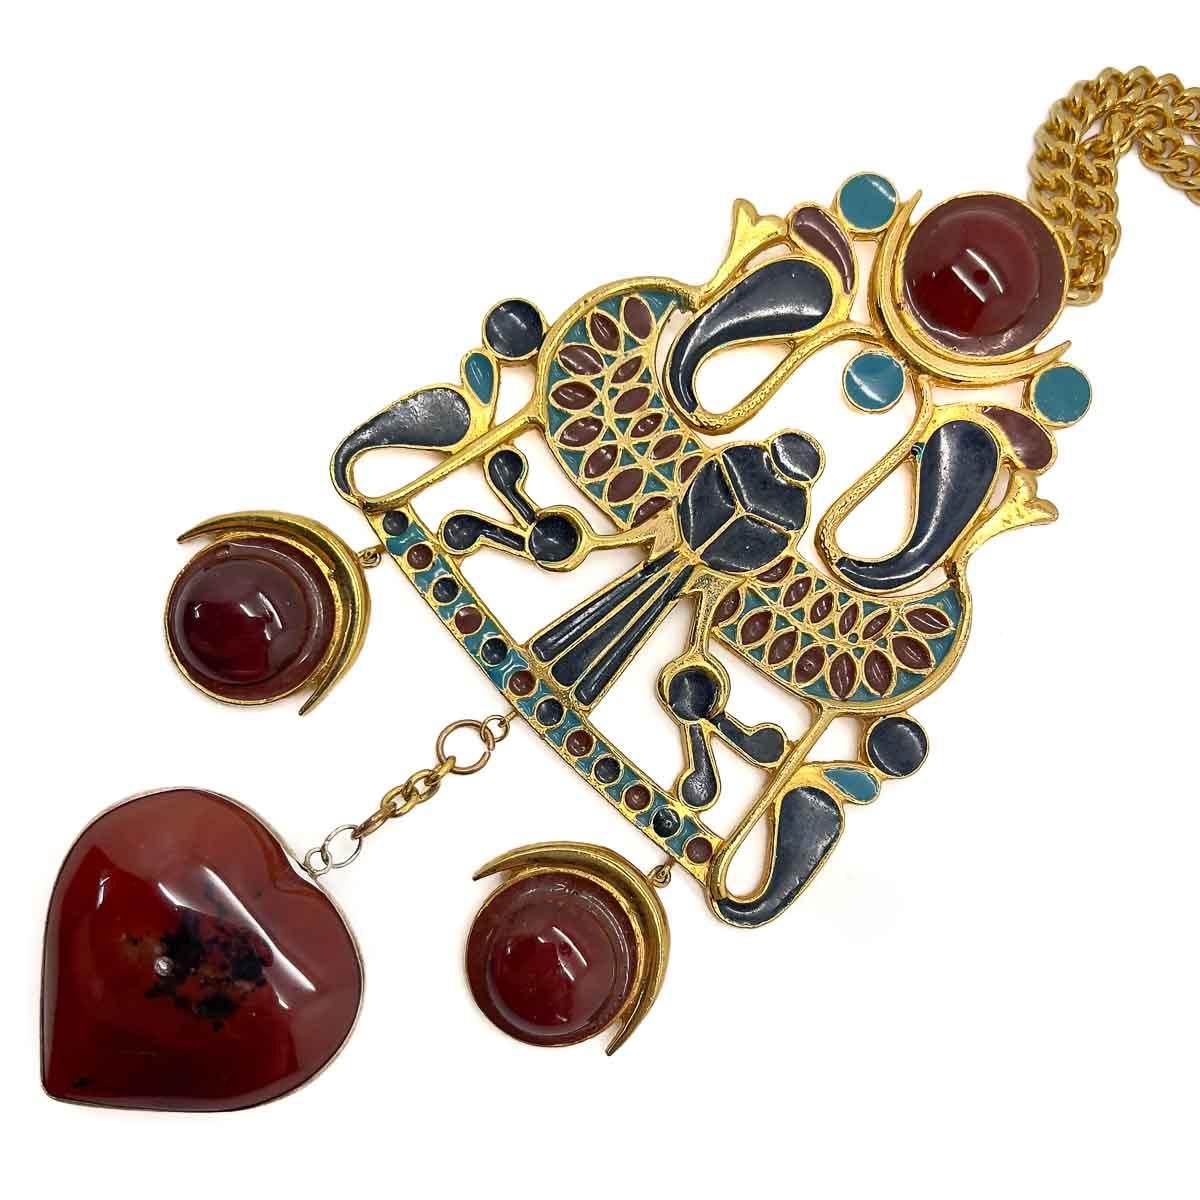 Collier Vintage Adrian Mann de style néo-égyptien. Un énorme collier pectoral inspiré du renouveau égyptien des années 1970. L'attention portée aux détails ainsi que l'échelle de cette pièce sont fascinantes. L'émail bleu marine, turquoise et brun